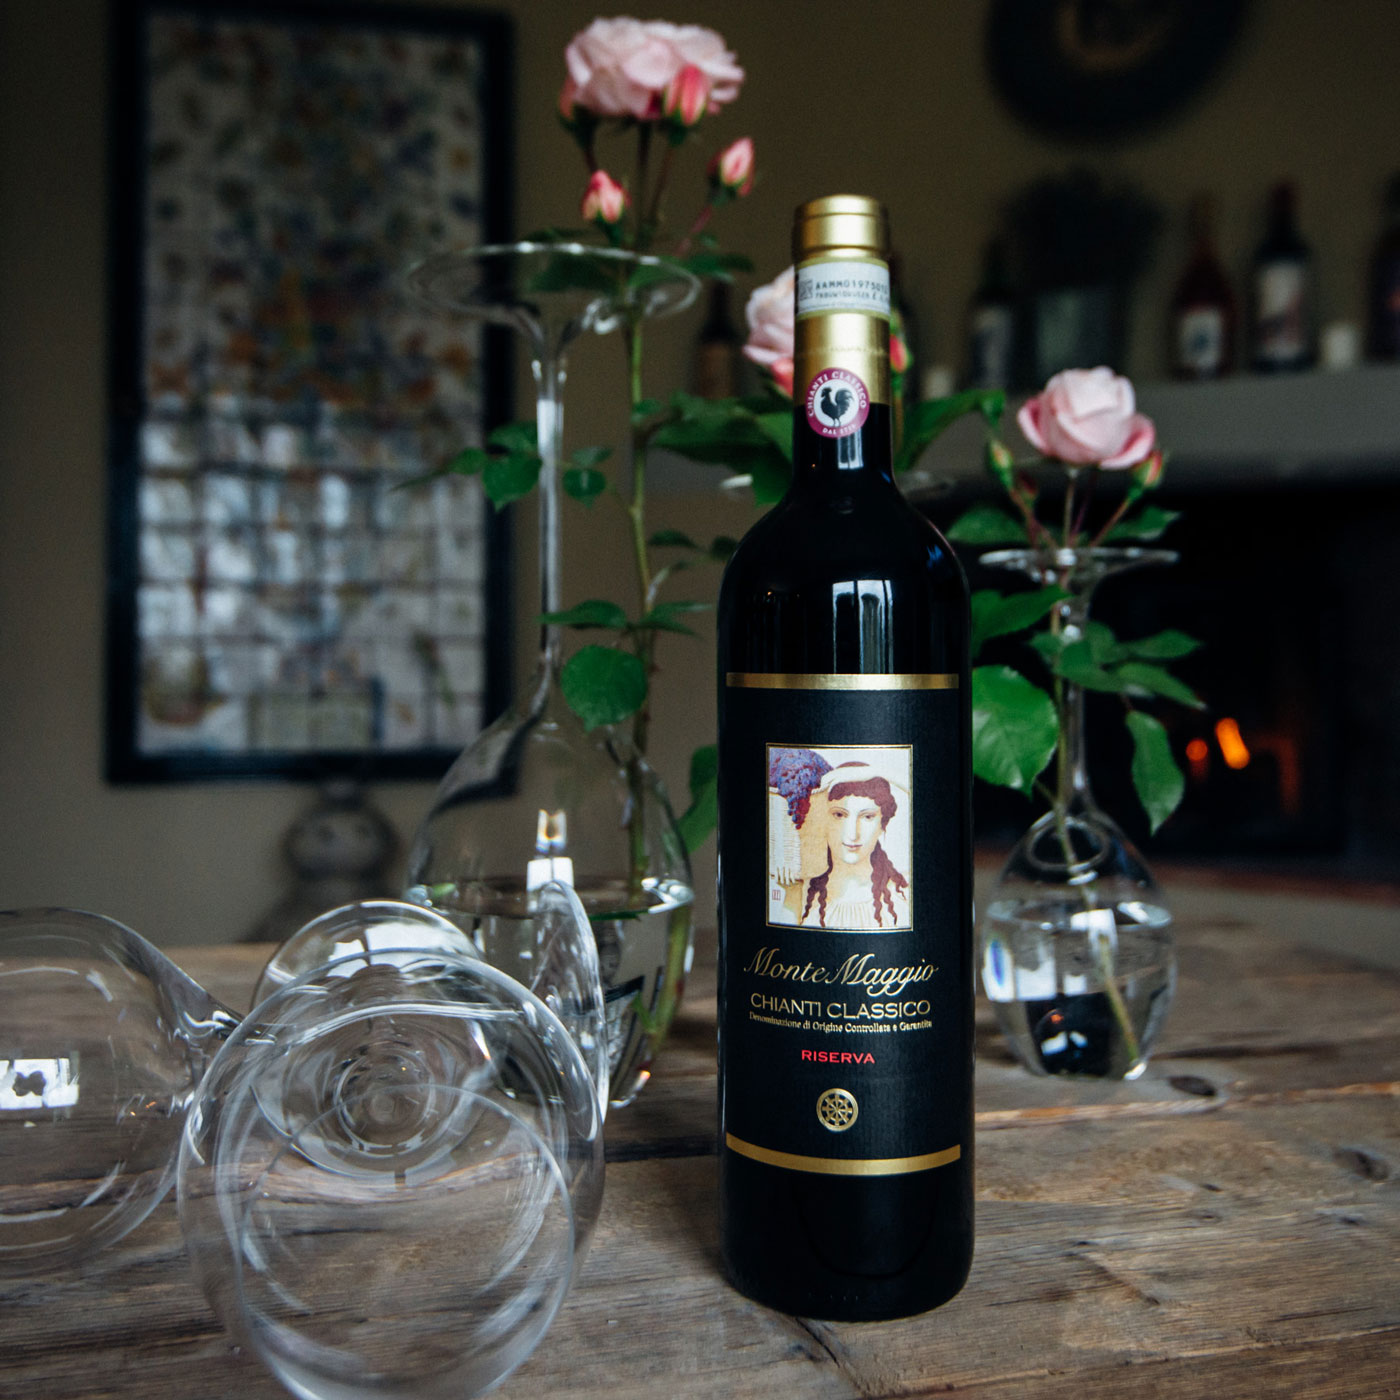 Chianti Classico Riserva - an authentic and organic Tuscan wine